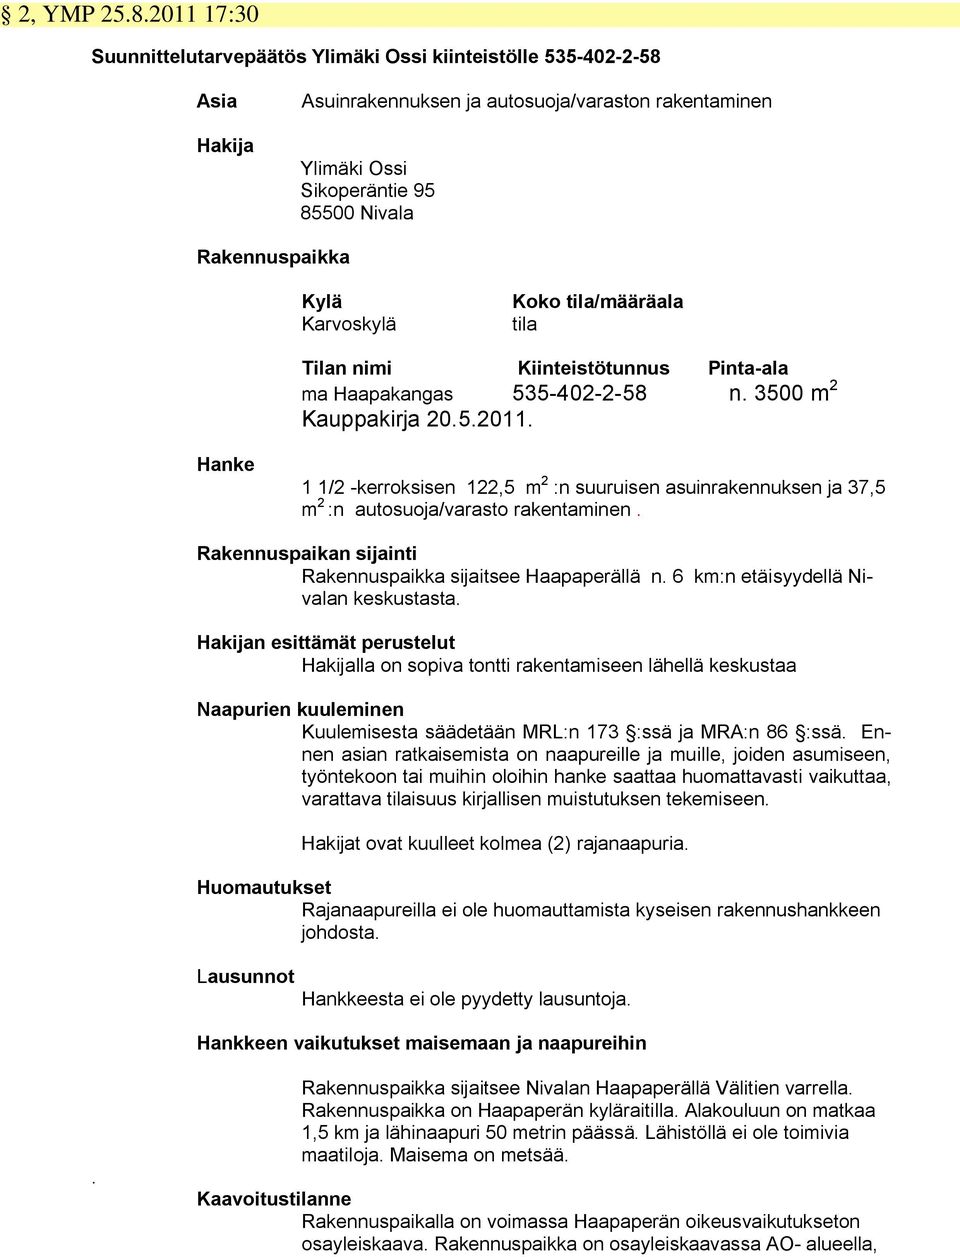 Karvoskylä Koko tila/määräala tila Tilan nimi Kiinteistötunnus Pinta-ala ma Haapakangas 535-402-2-58 n. 3500 m 2 Kauppakirja 20.5.2011.